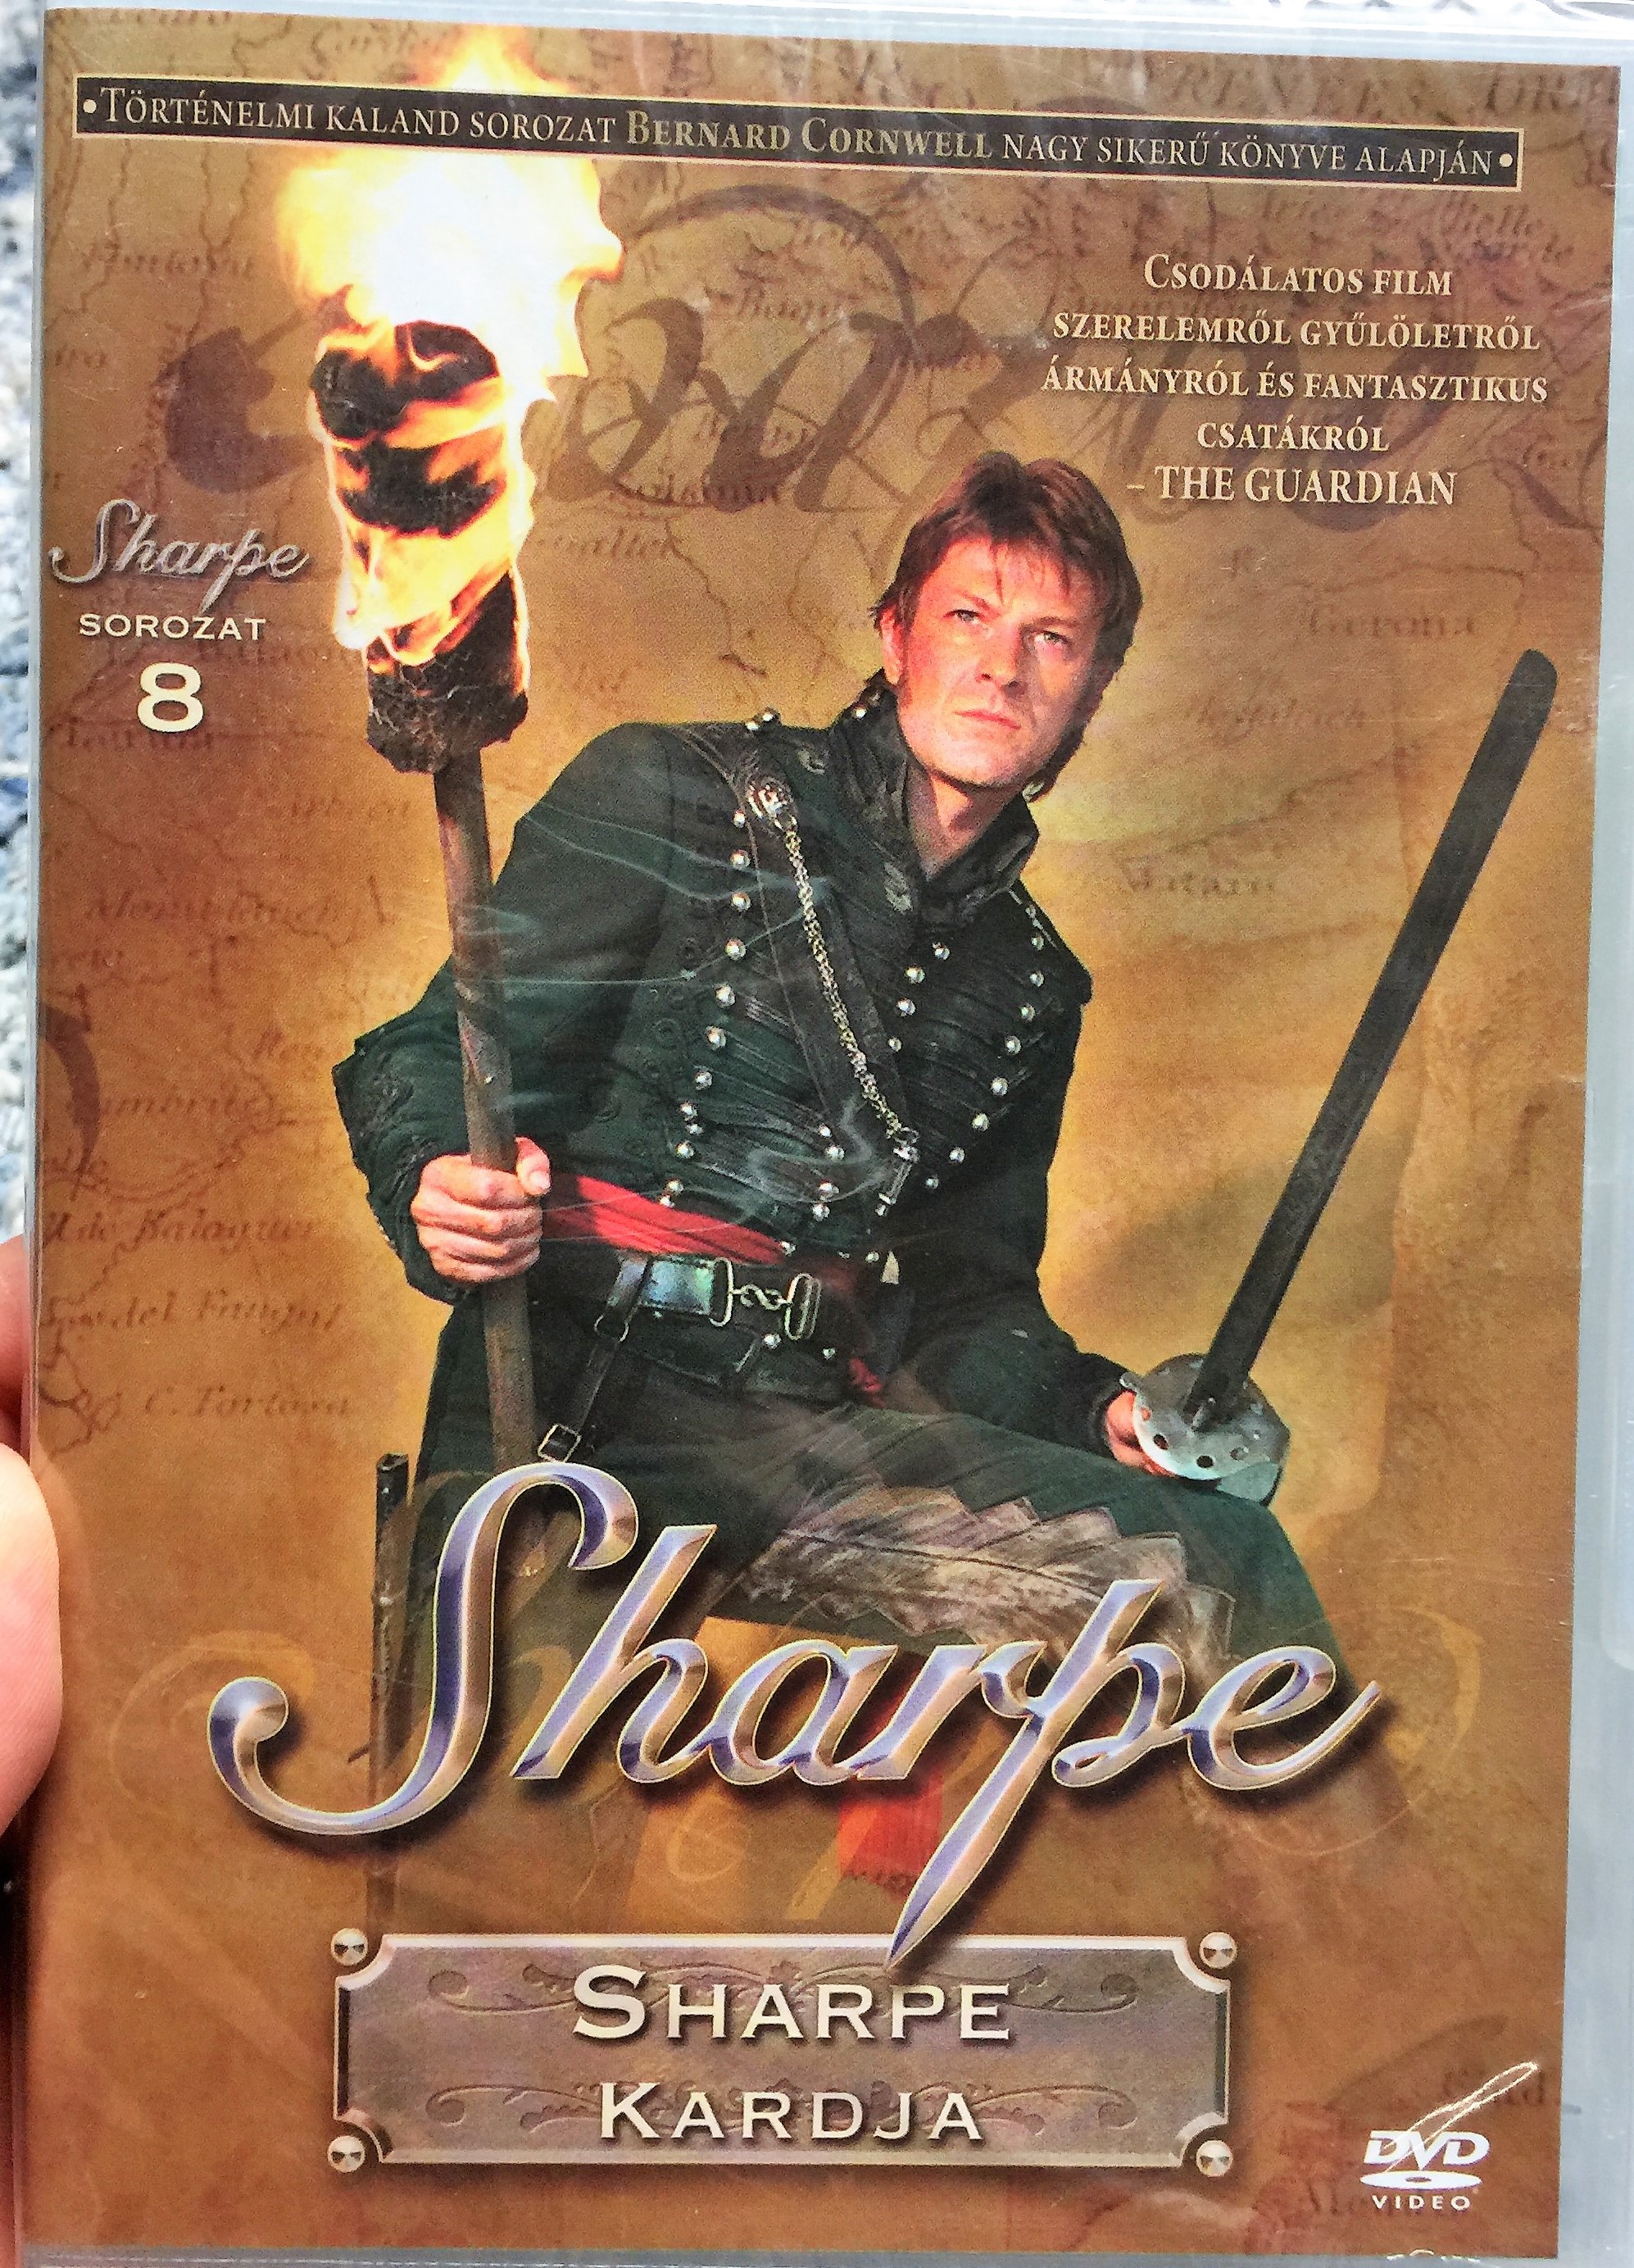 Sharpe Series 8. Sharpe' Sword DVD 1995 Sharpe Sorozat 8 1